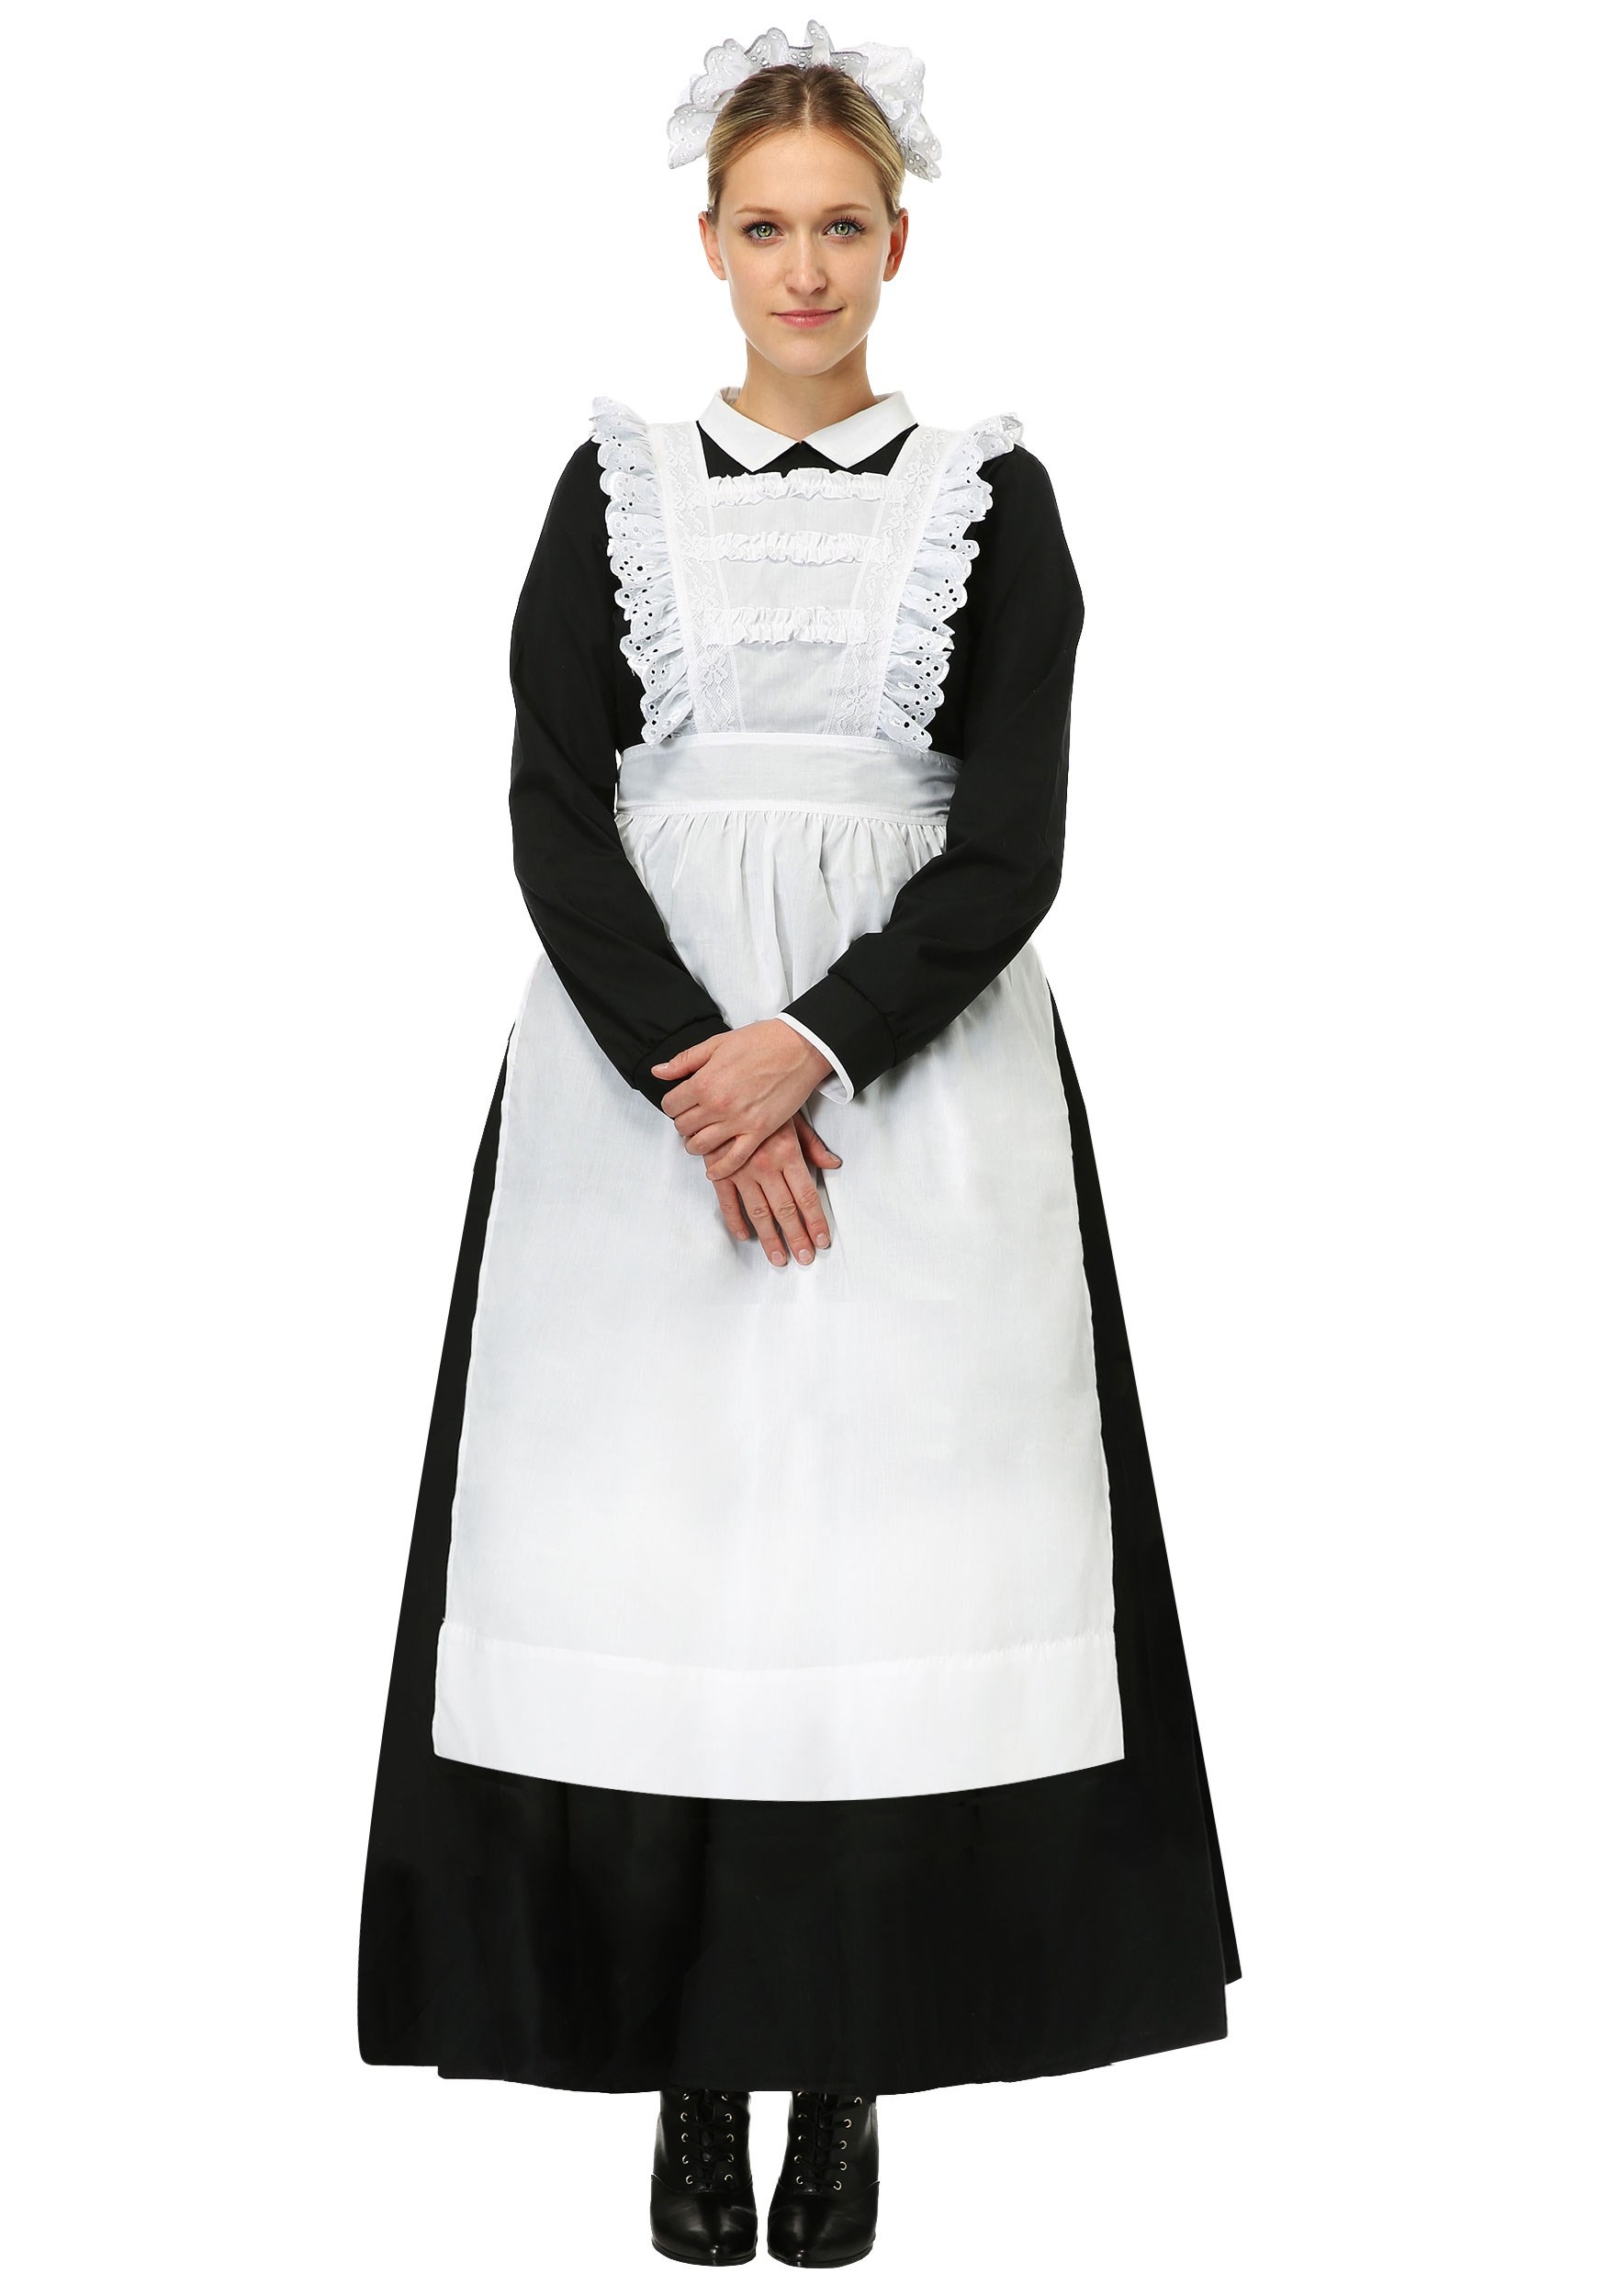 1950s Apron History: Tea Apron, Half Apron, Cobbler Apron Traditional Plus Size Maid Costume for Women $69.99 AT vintagedancer.com